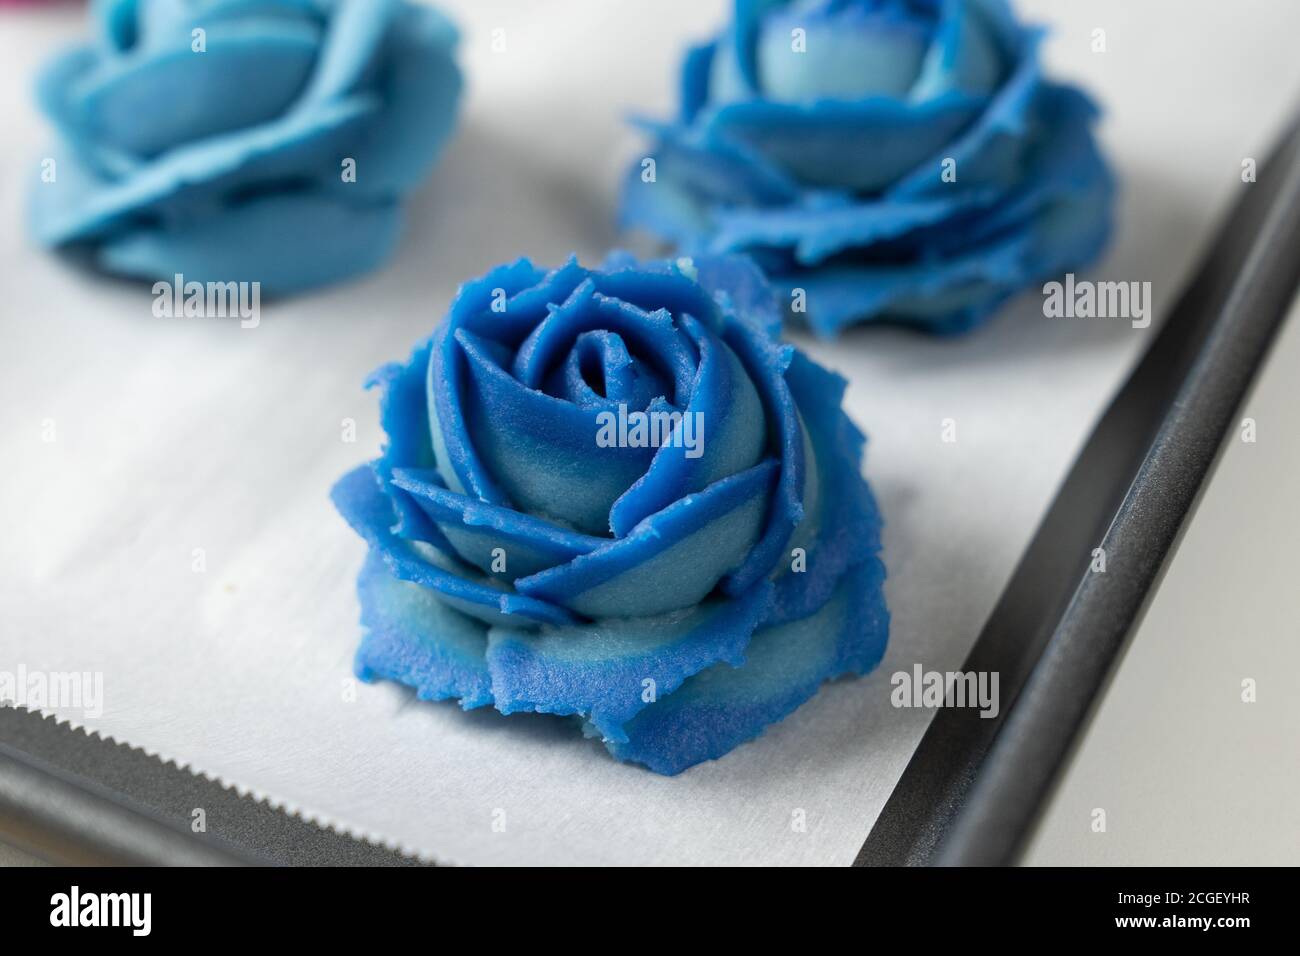 Blue rose flower mooncake Stock Photo